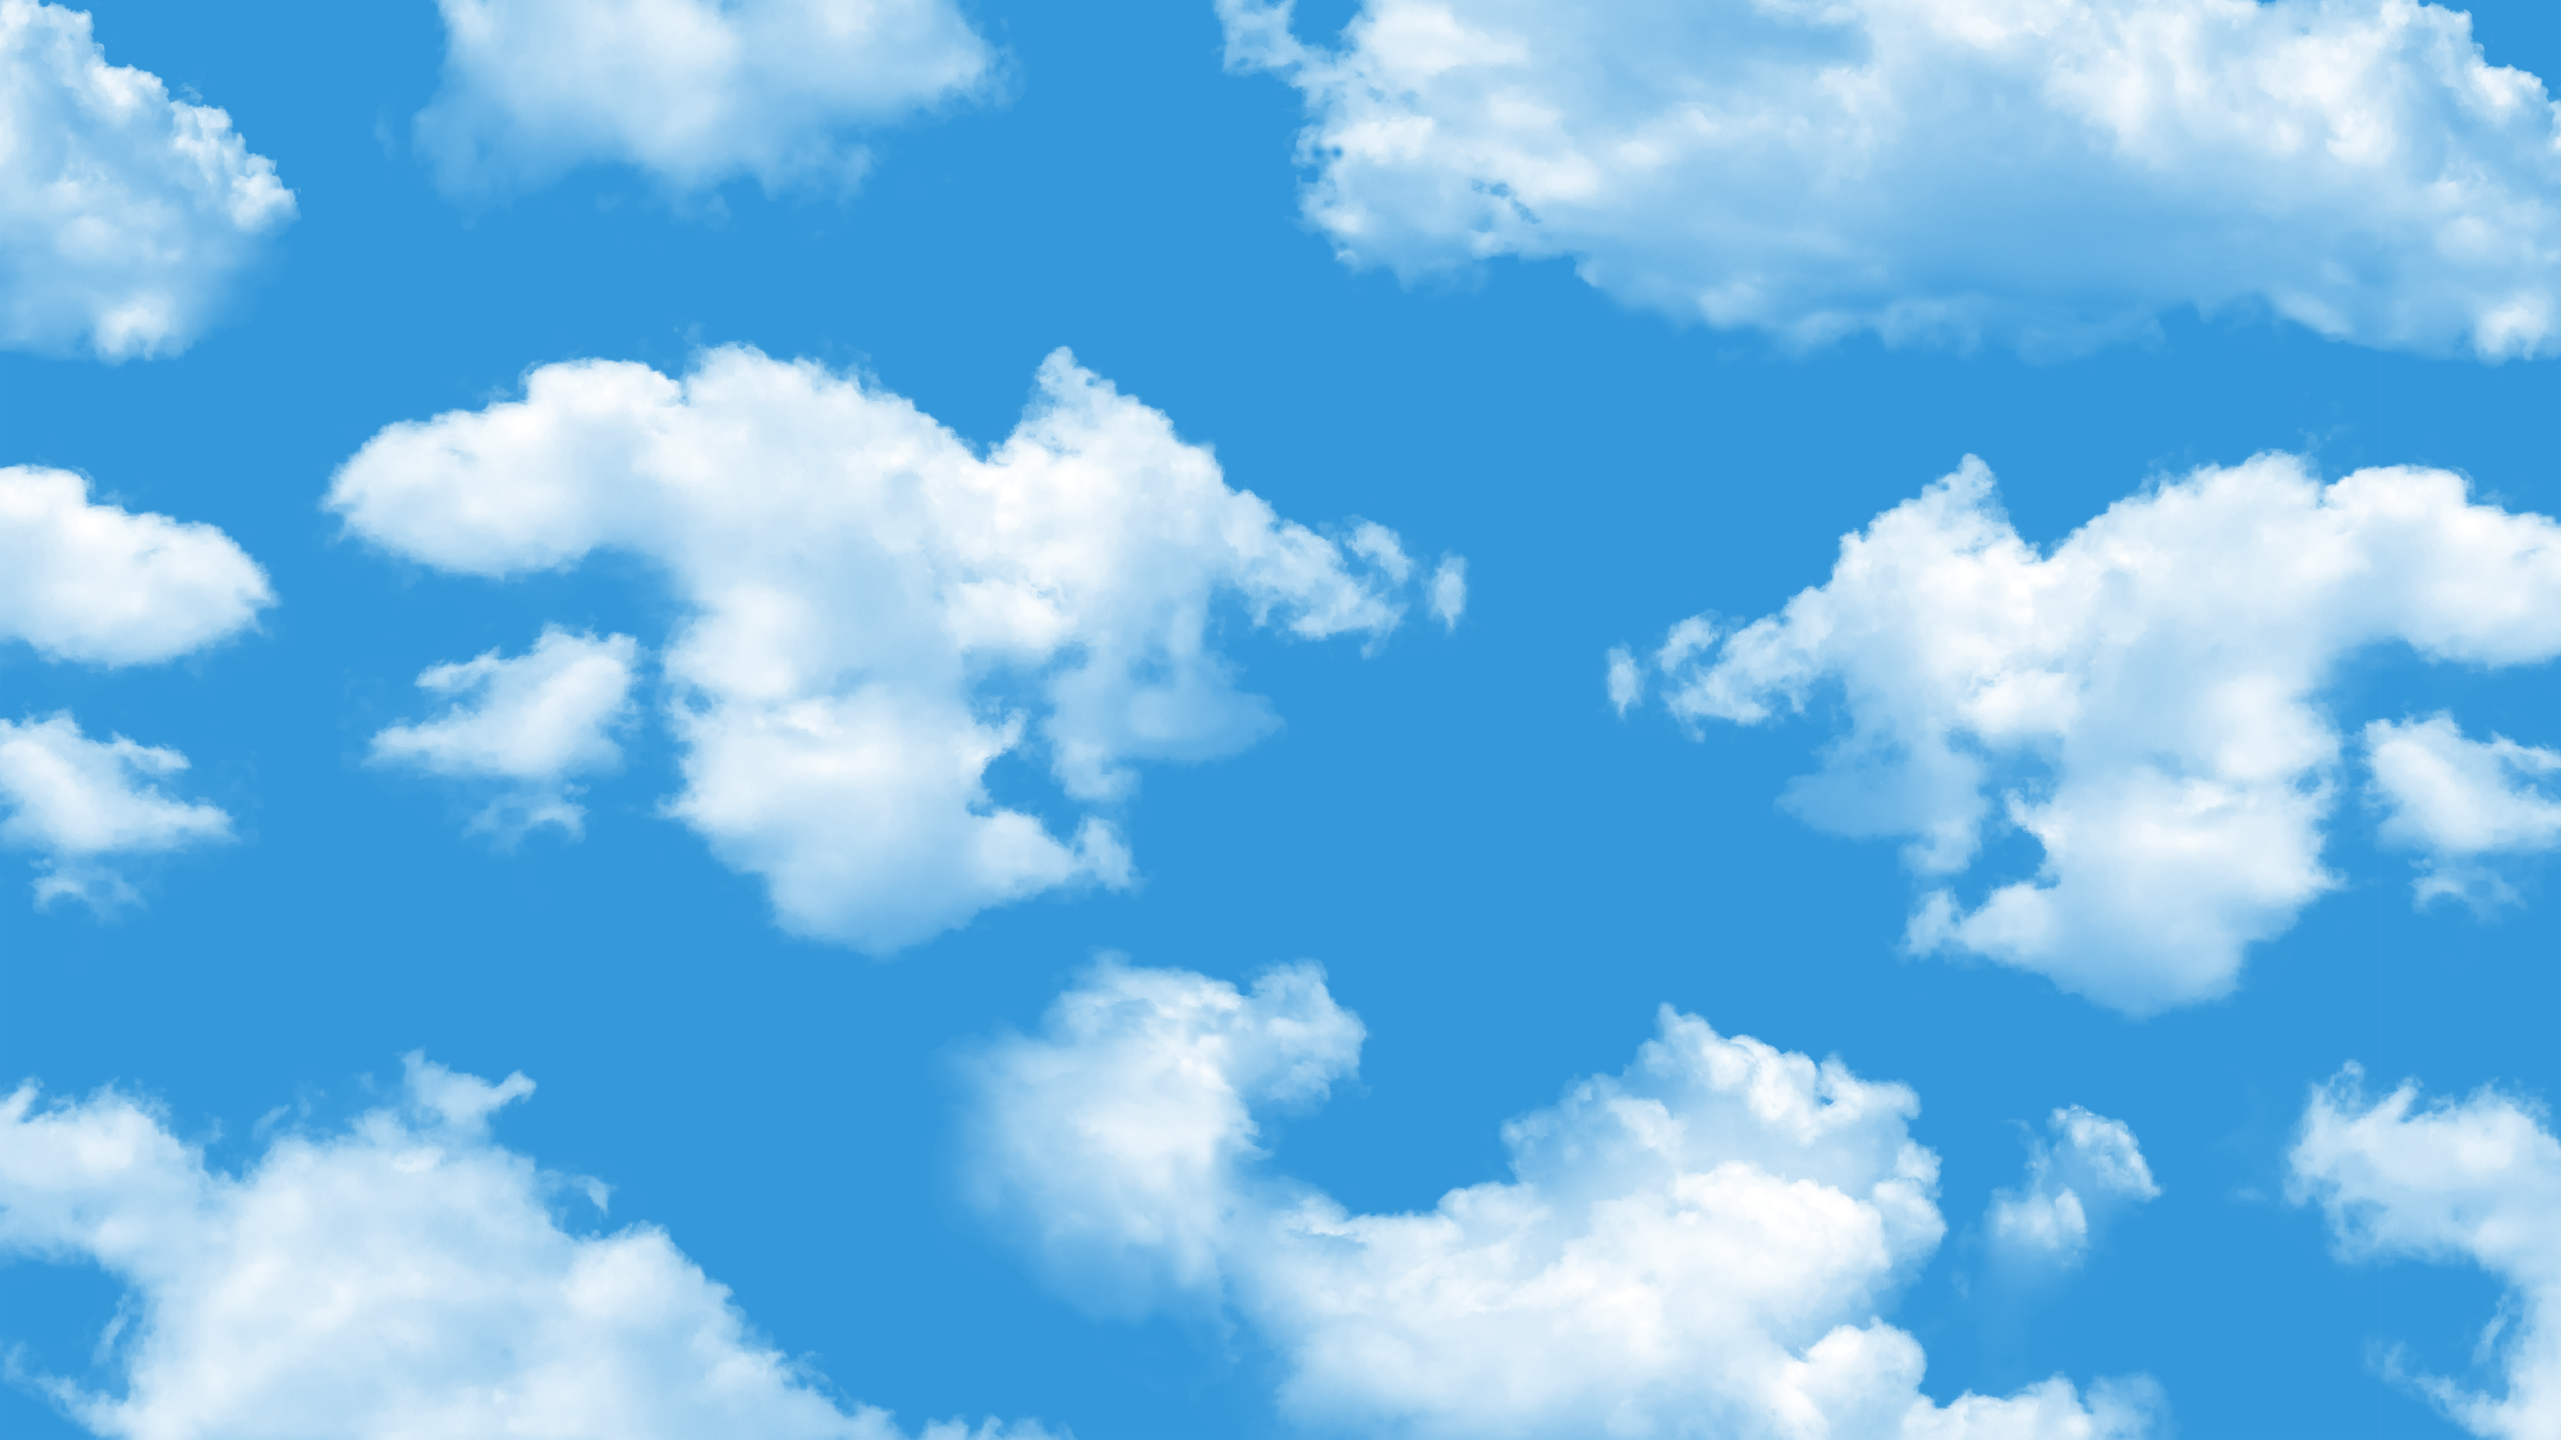 Clouds_Desktop_Wide_2560_1440.png